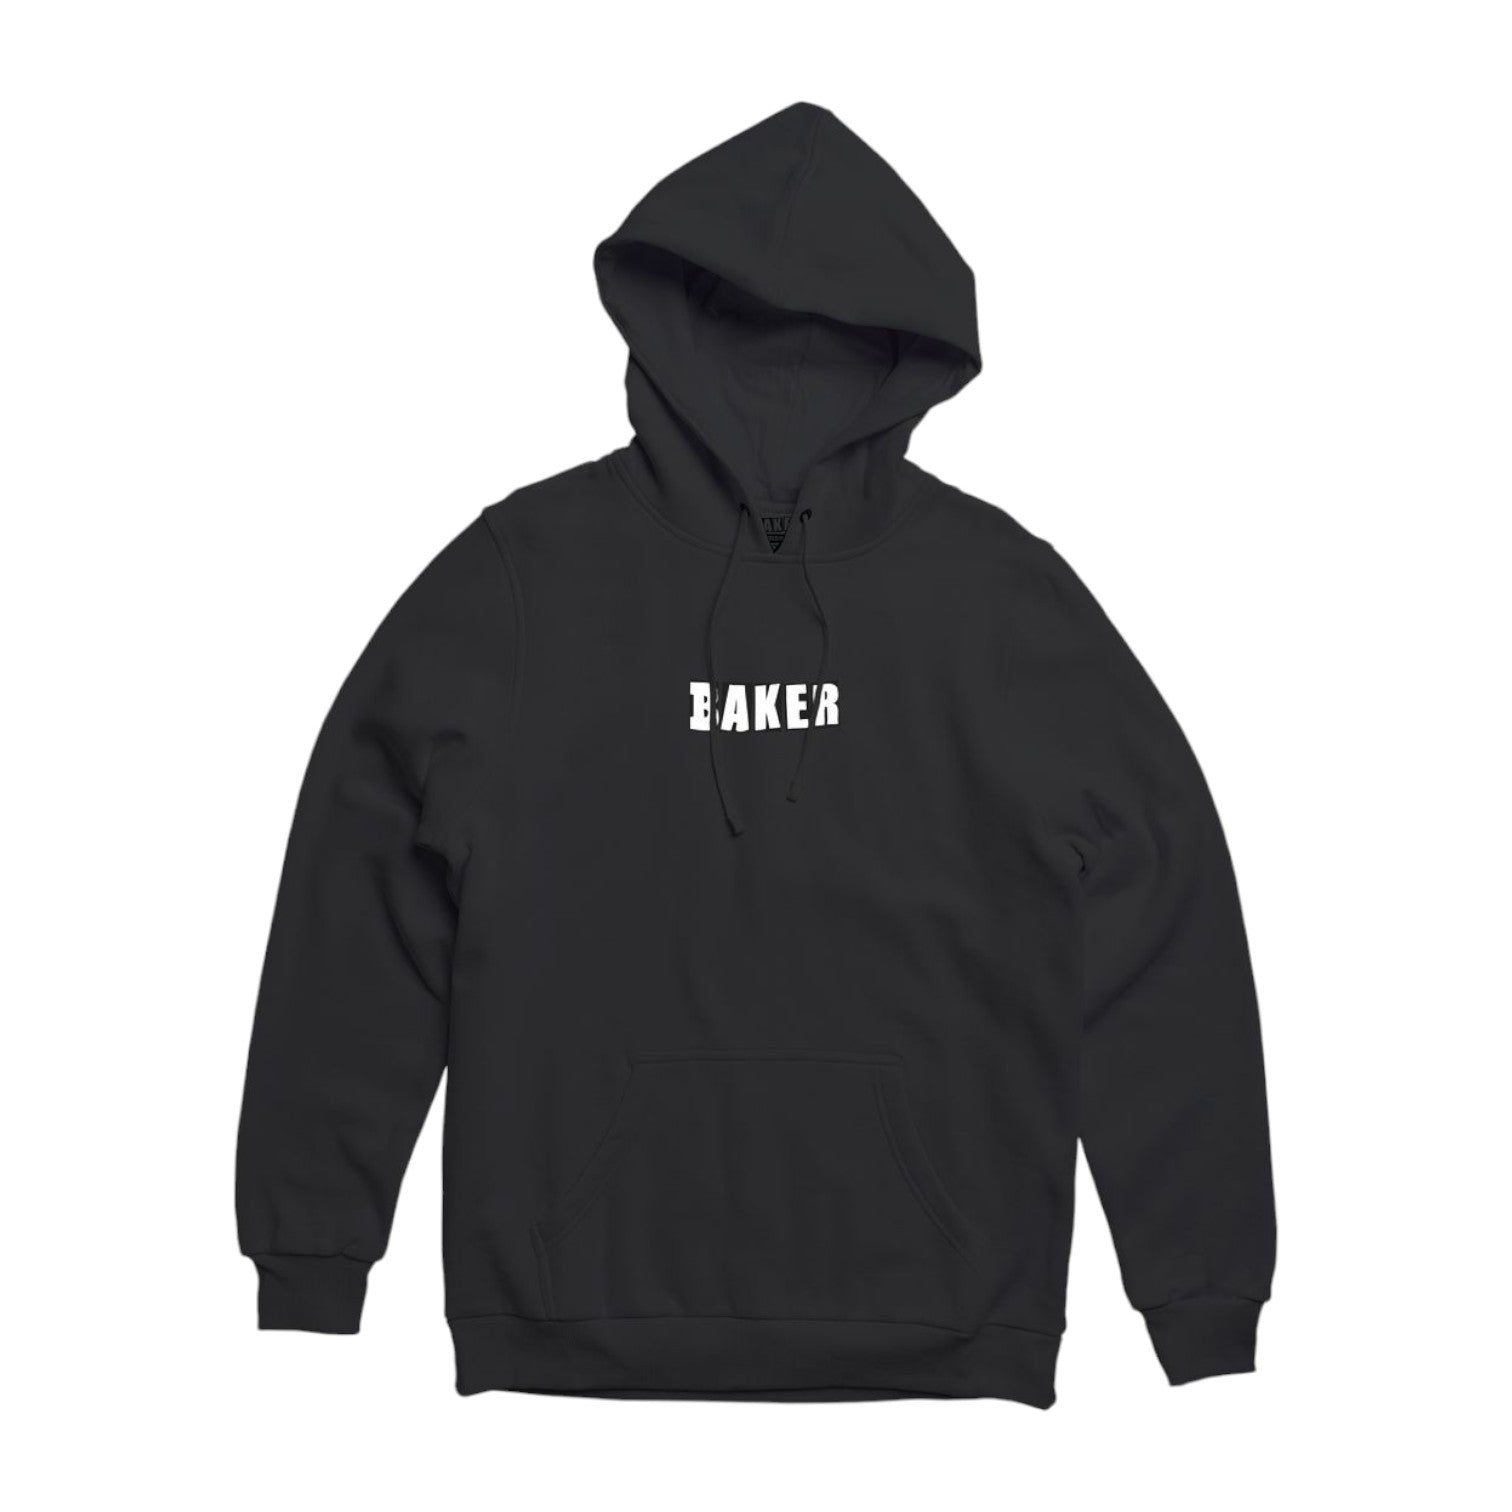 Baker Brand Logo Sweater - Black